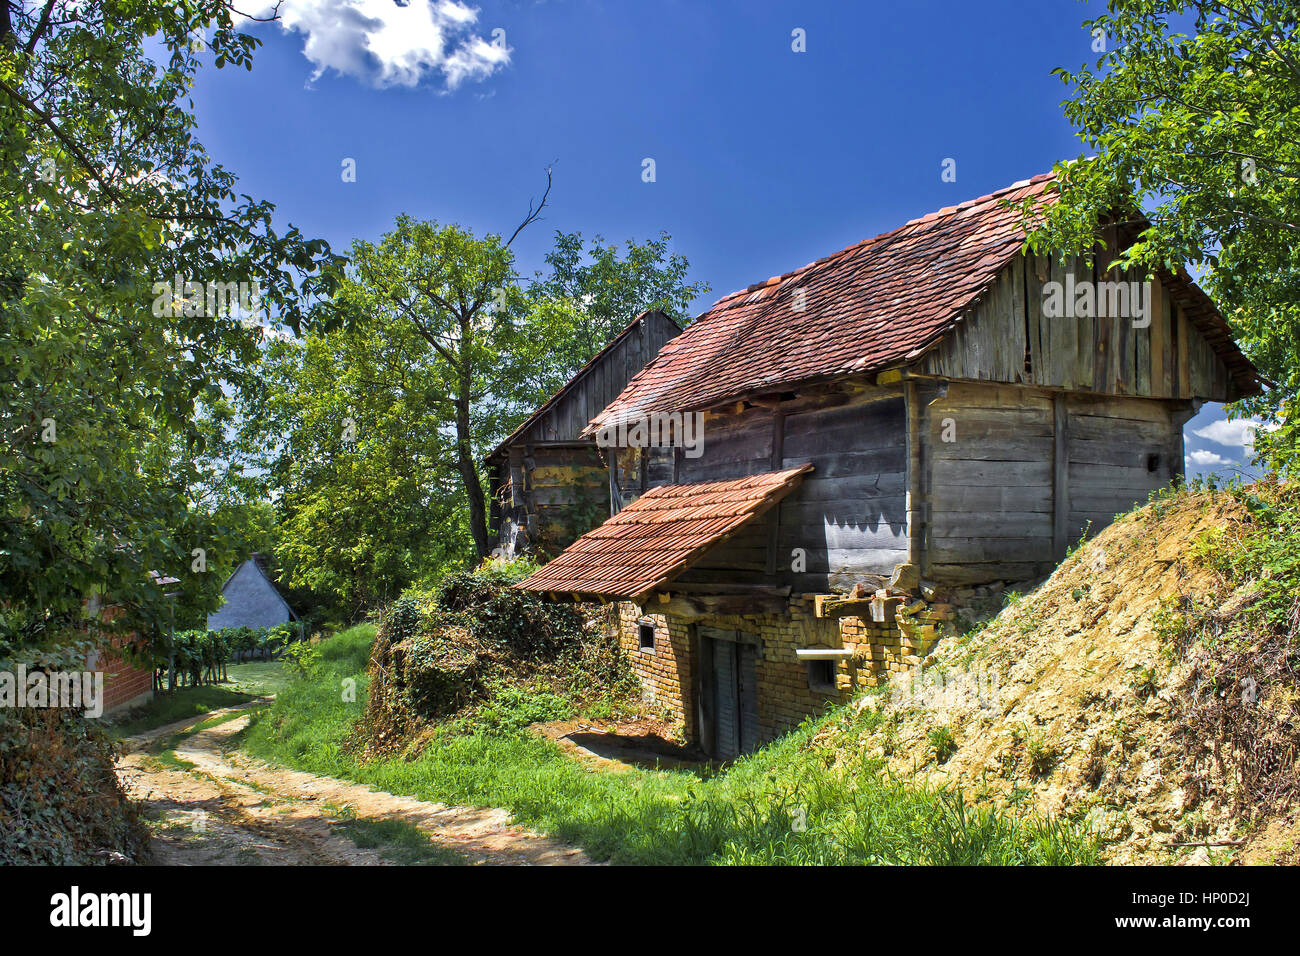 Ländliche Dorf von Zaistovec in Kroatien, mit Holzhütten - Weinkeller und unbefestigte Straße Stockfoto